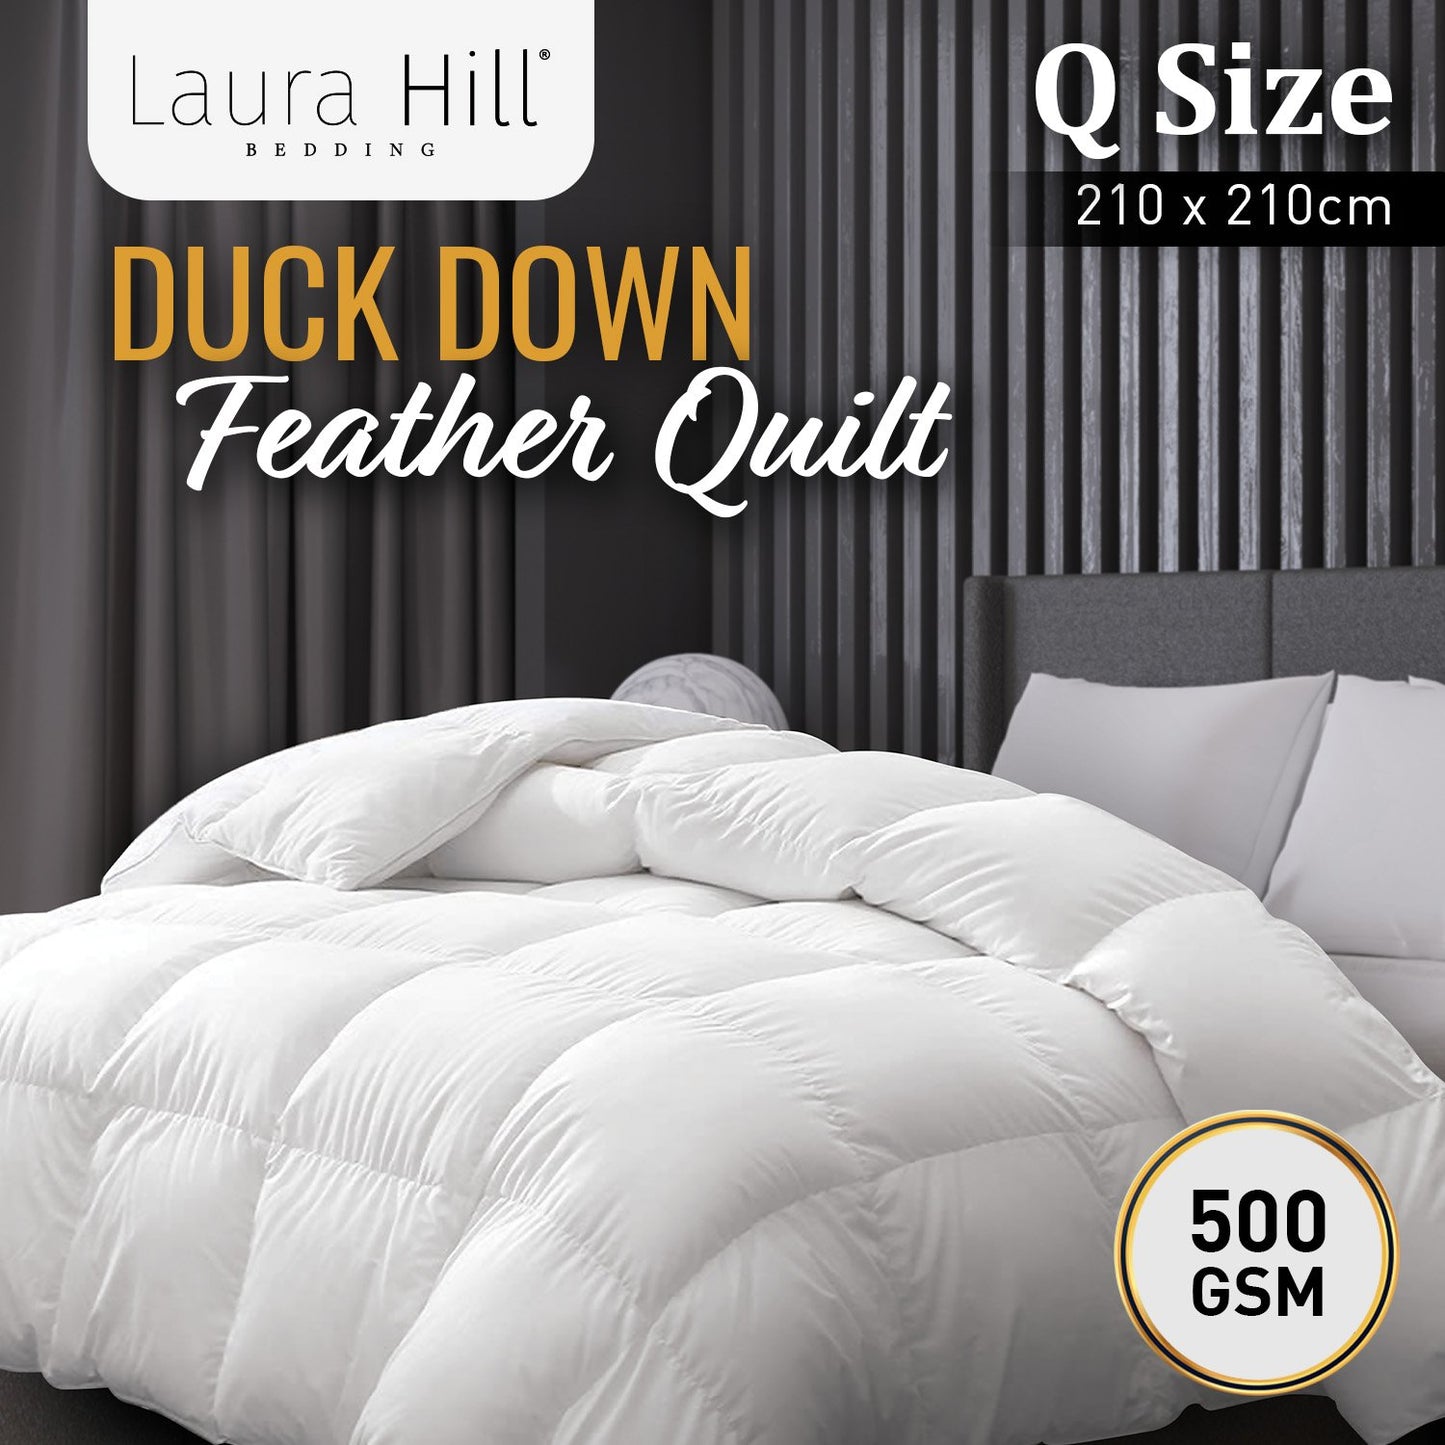 Laura Hill 500GSM Duck Down Feather Quilt Comforter Doona - Queen